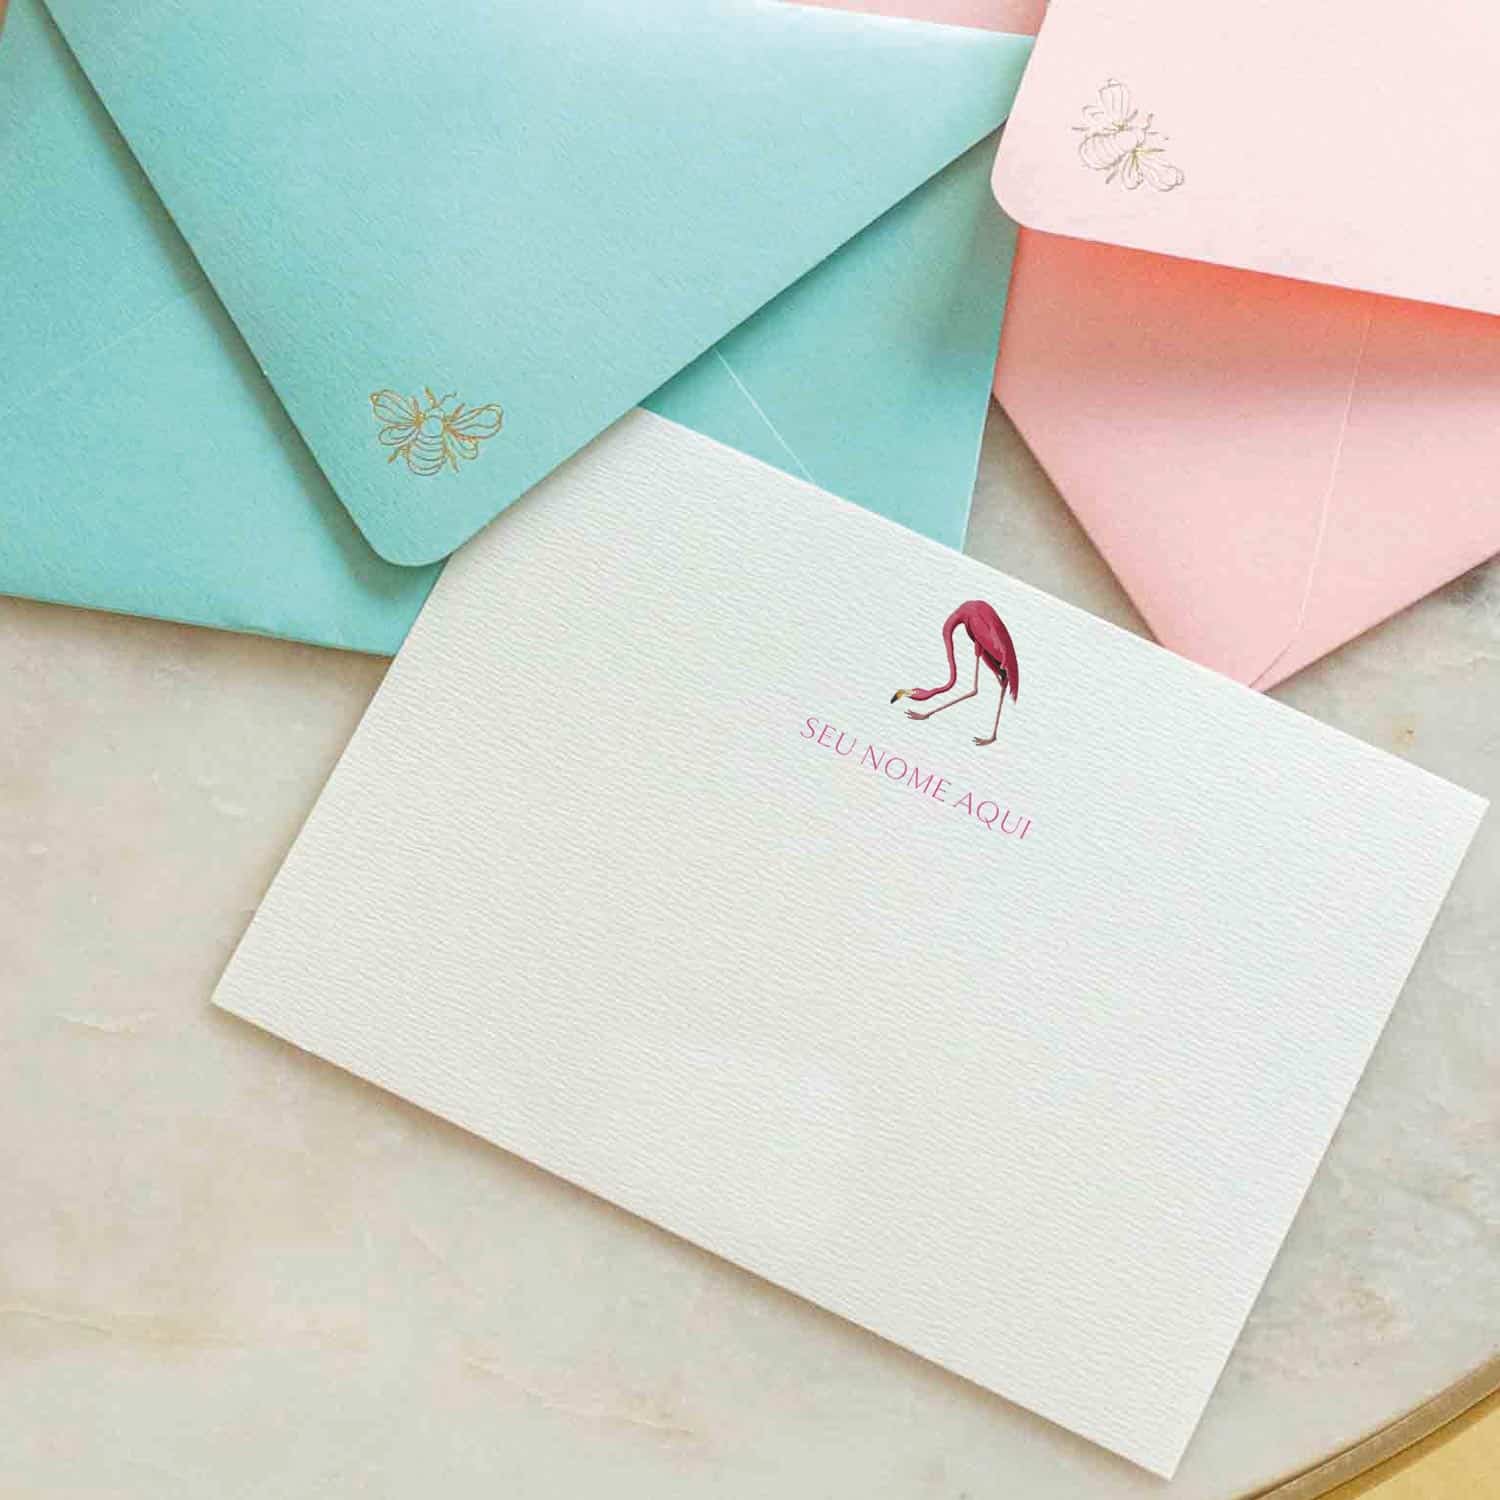 Cartao personalizado de flamingo com envelope colorido azul tiffany para papelaria personalizada e papel de carta